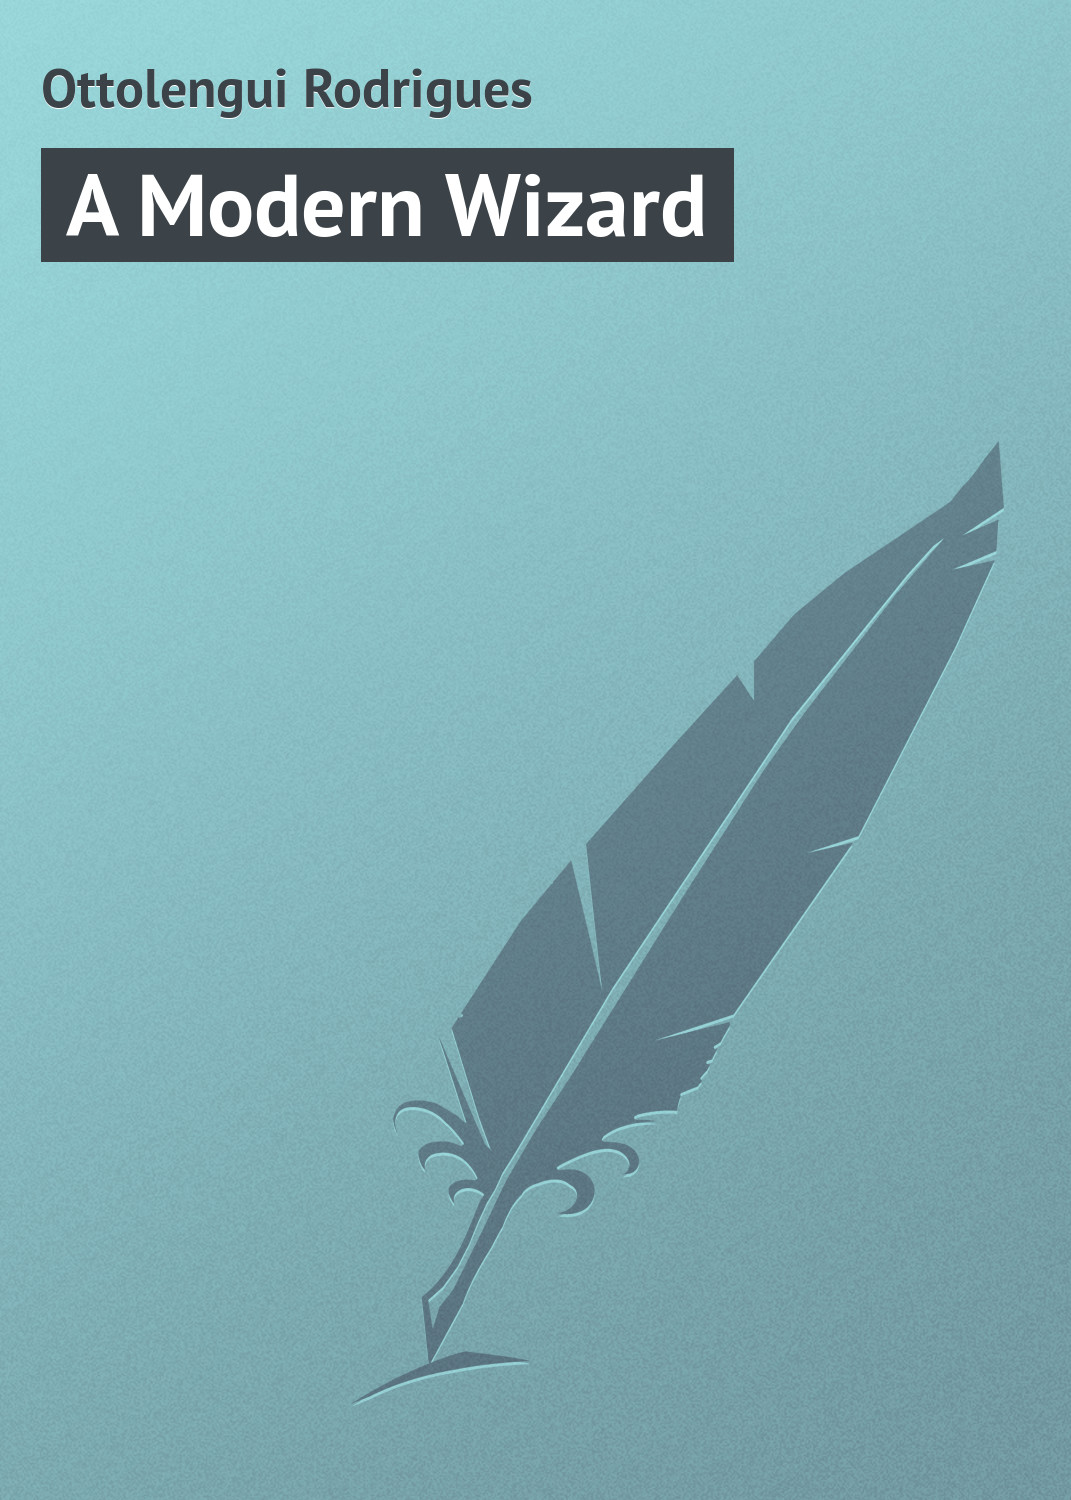 Книга A Modern Wizard из серии , созданная Rodrigues Ottolengui, может относится к жанру Классические детективы, Зарубежные детективы, Зарубежная классика. Стоимость электронной книги A Modern Wizard с идентификатором 23157339 составляет 5.99 руб.